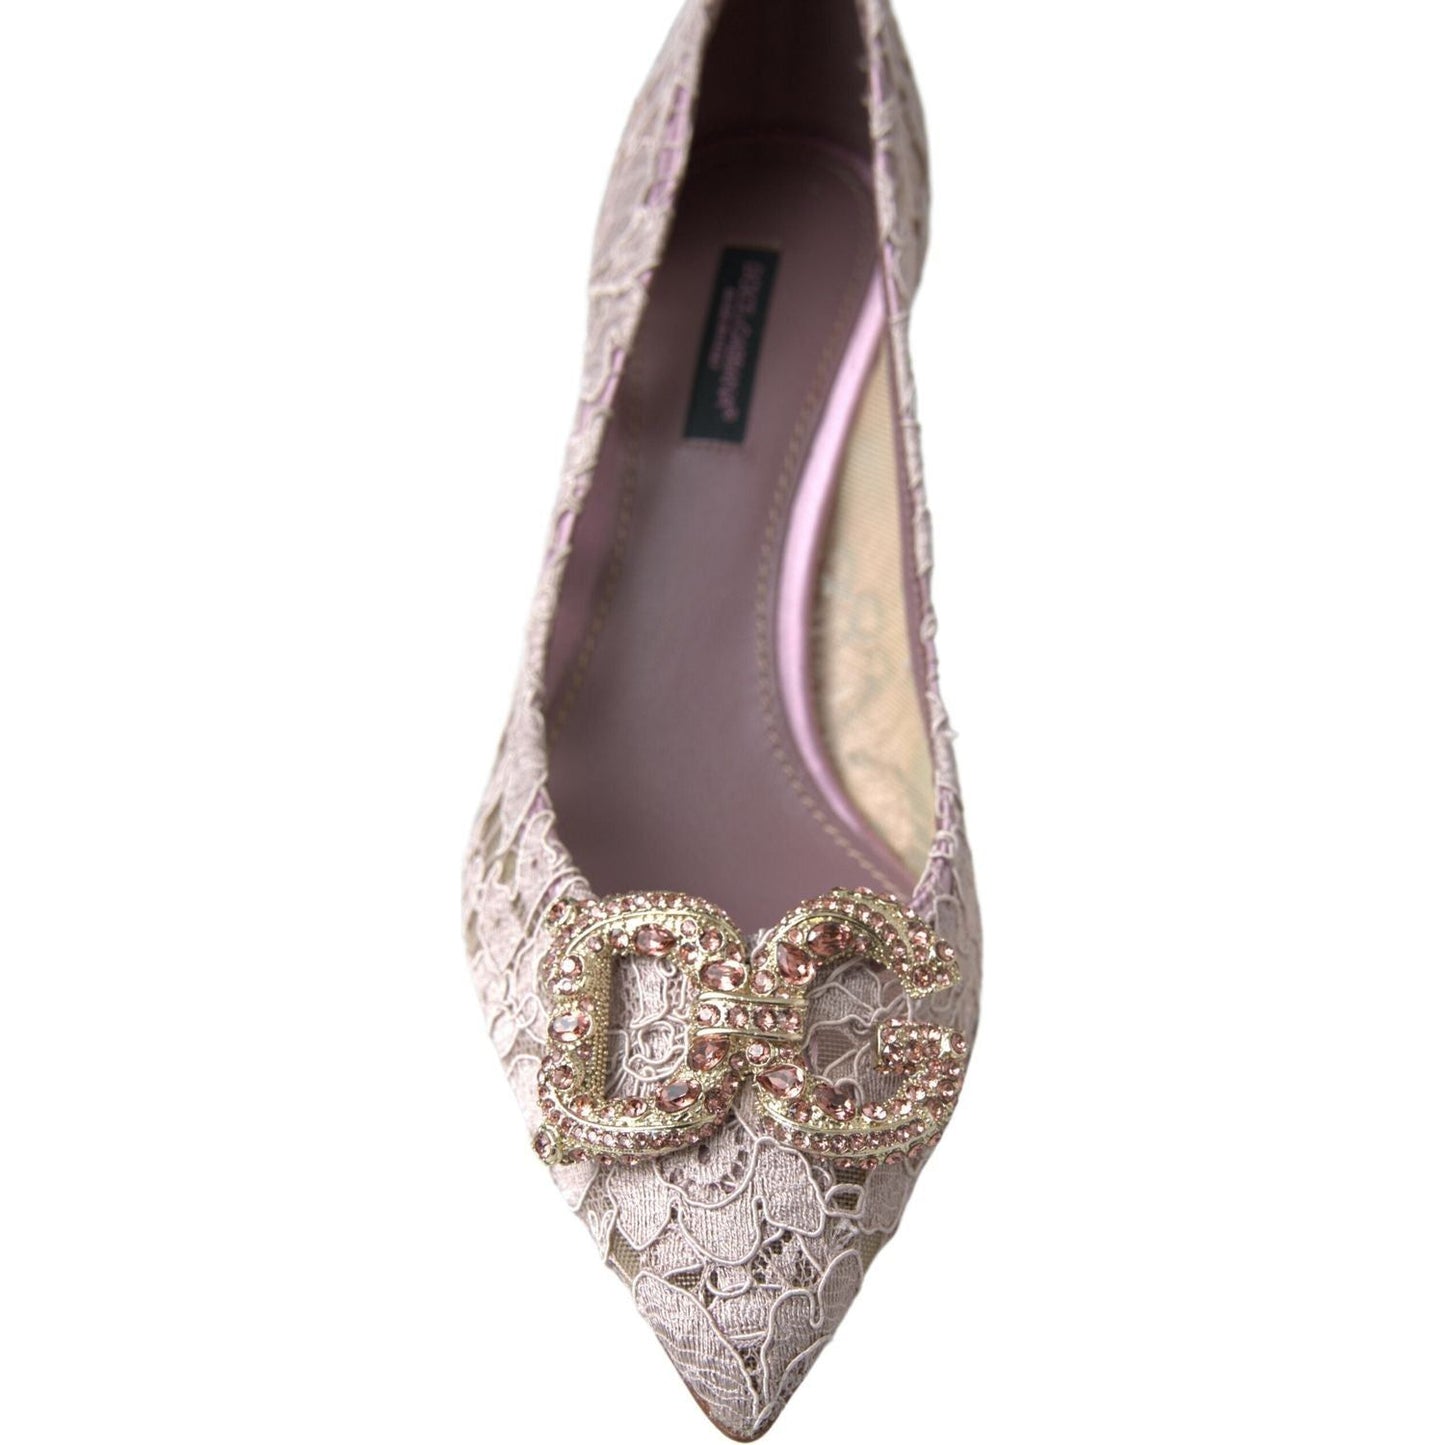 Dolce & Gabbana Elegant Pink Crystal Embellished Heels pink-floral-lace-dg-crystal-pumps-shoes 465A0085-scaled-4db9528f-91b.jpg